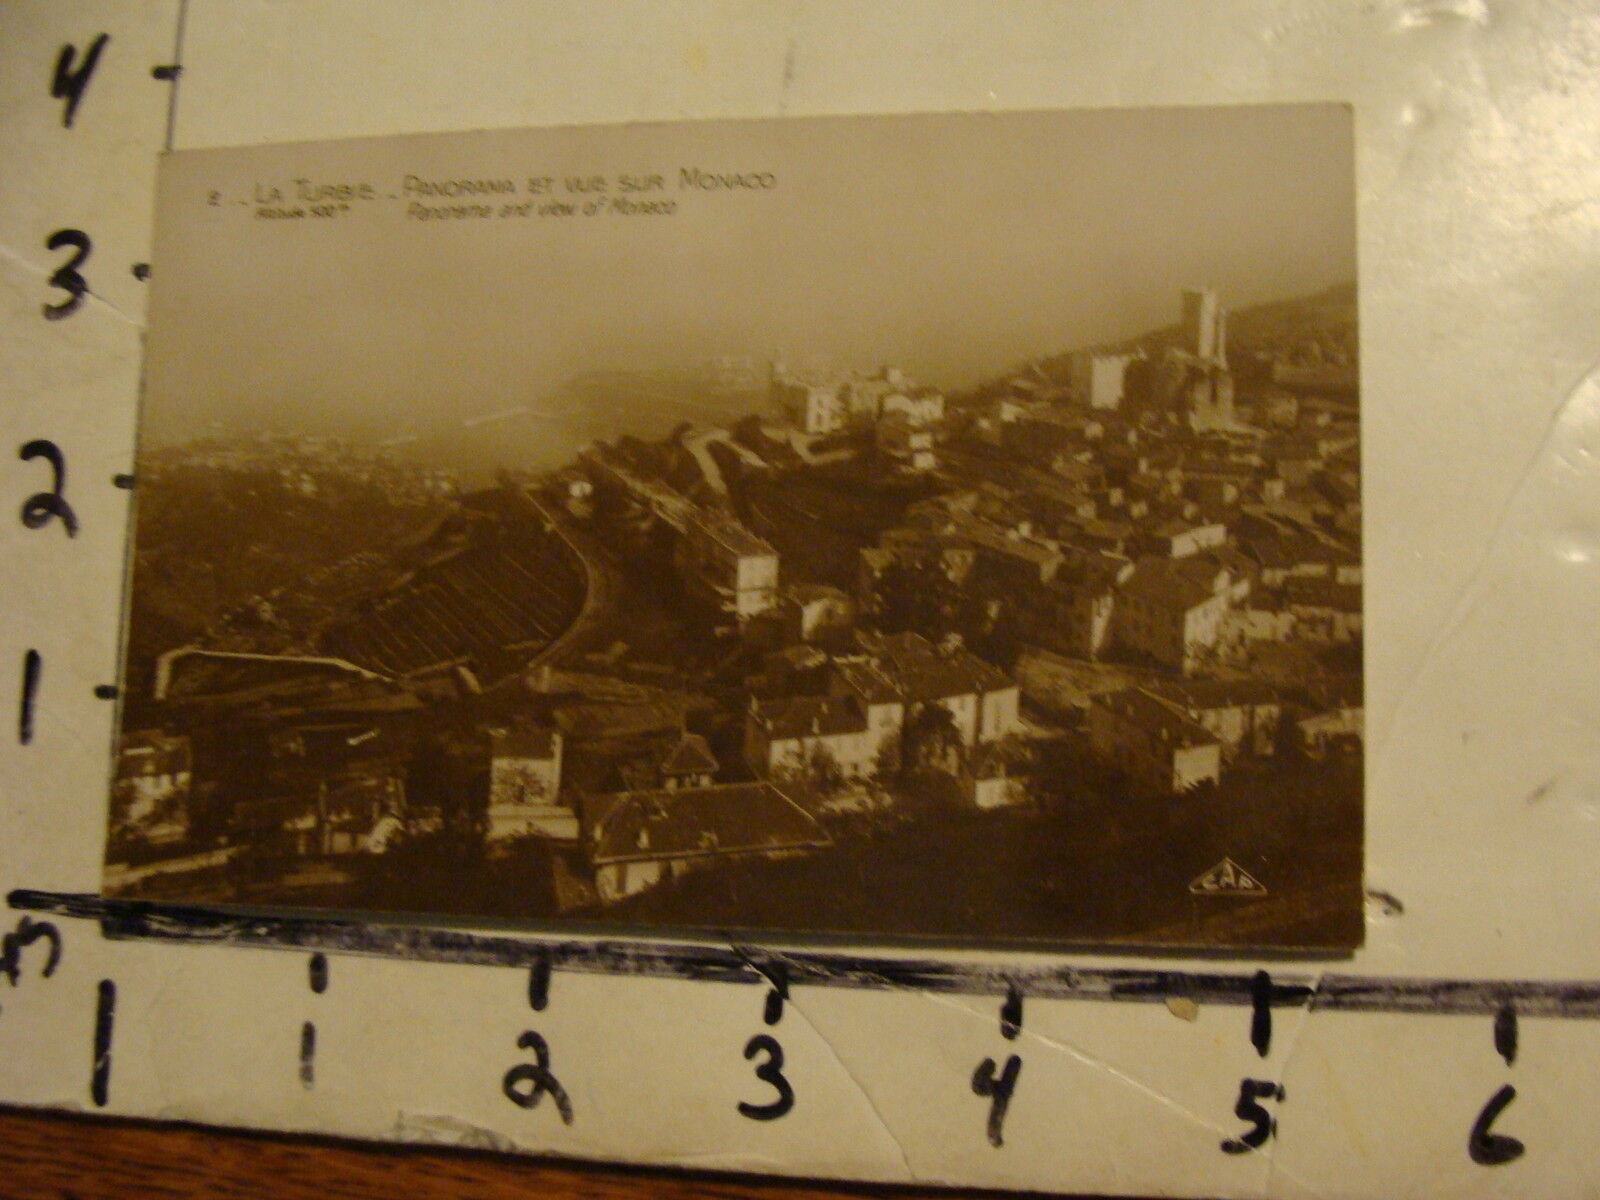 Vintage Real Photo Post Card: La Turbie--panorama et vue sur Monaco